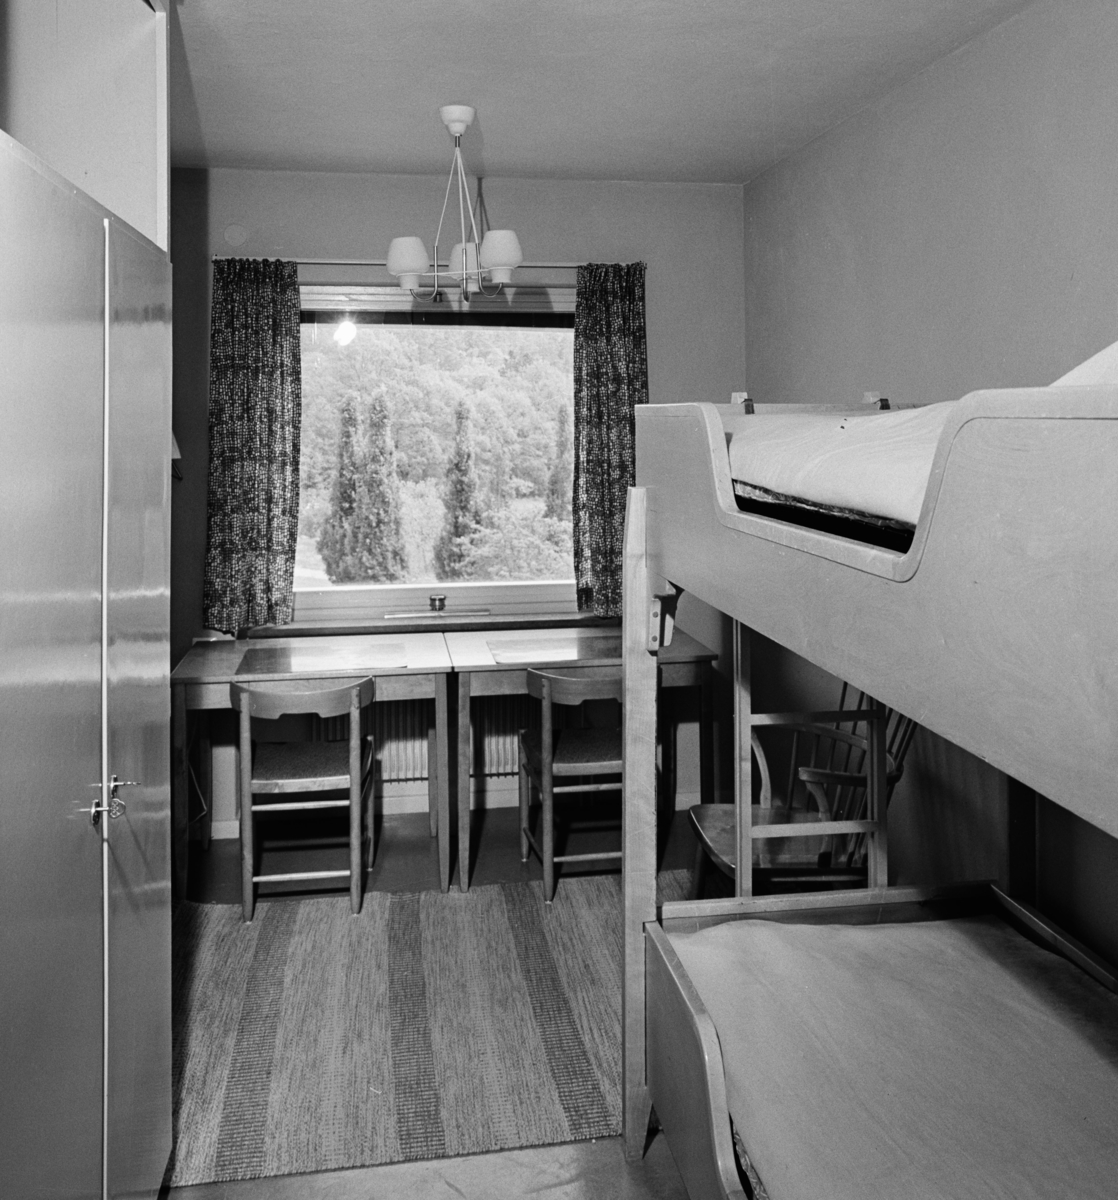 Bergendal
Interiör, sovrum med våningssäng